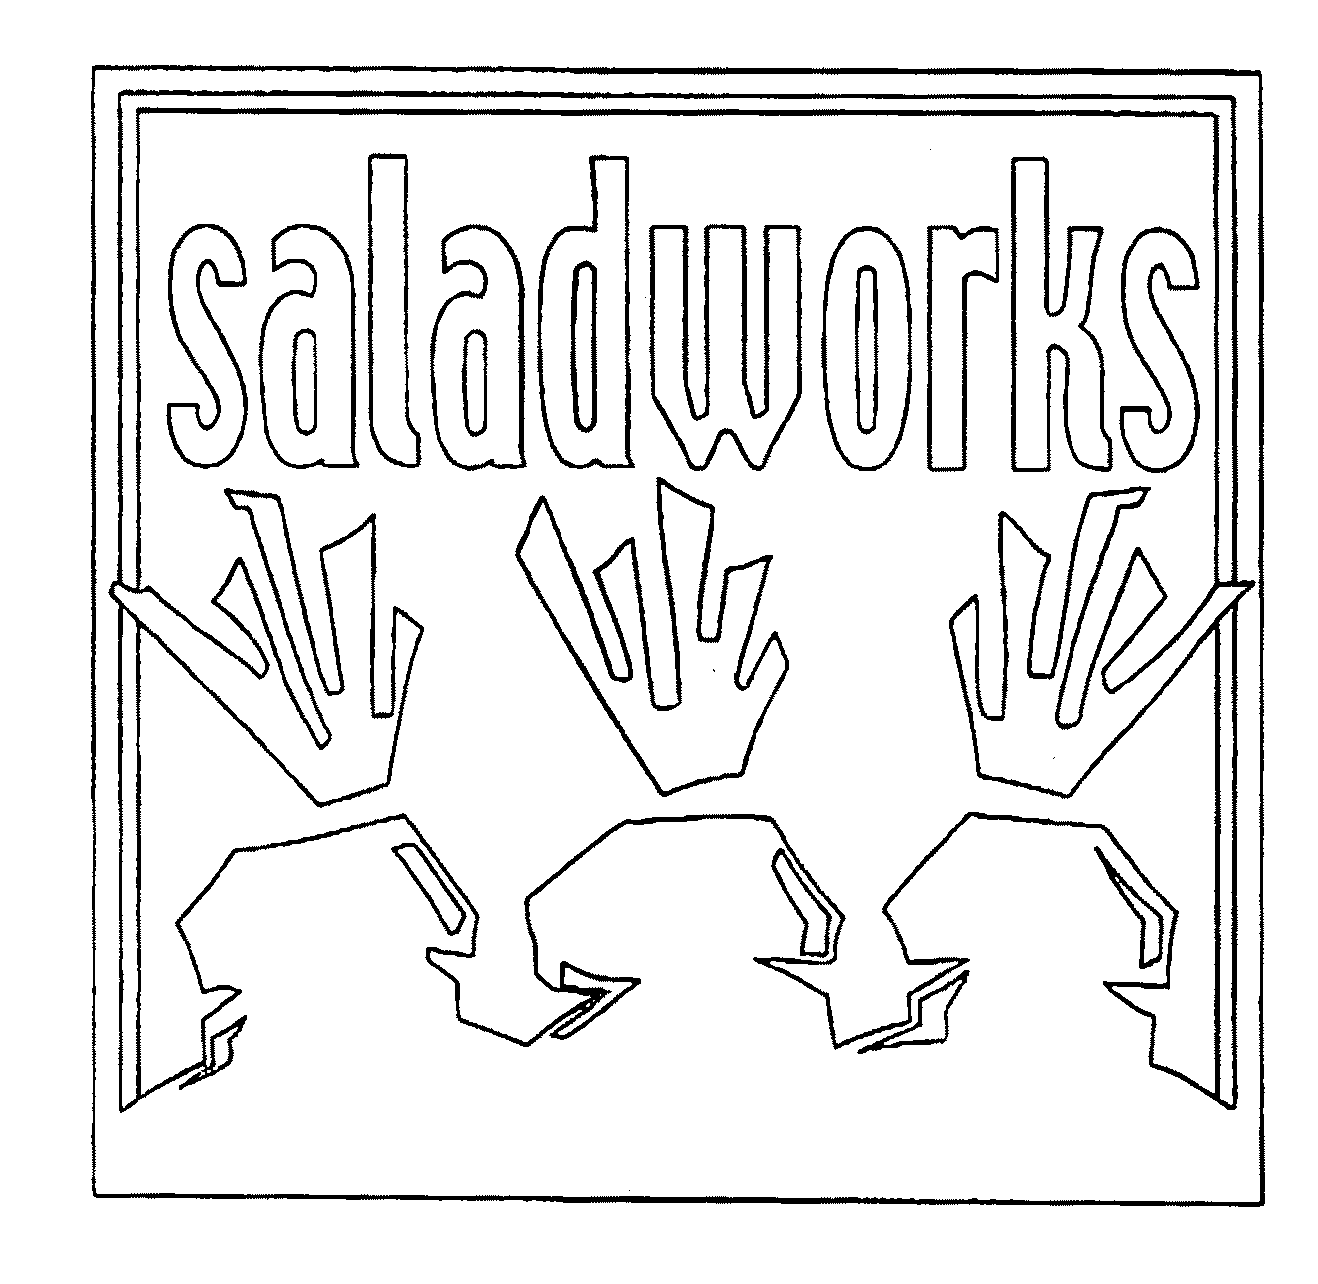 SALADWORKS